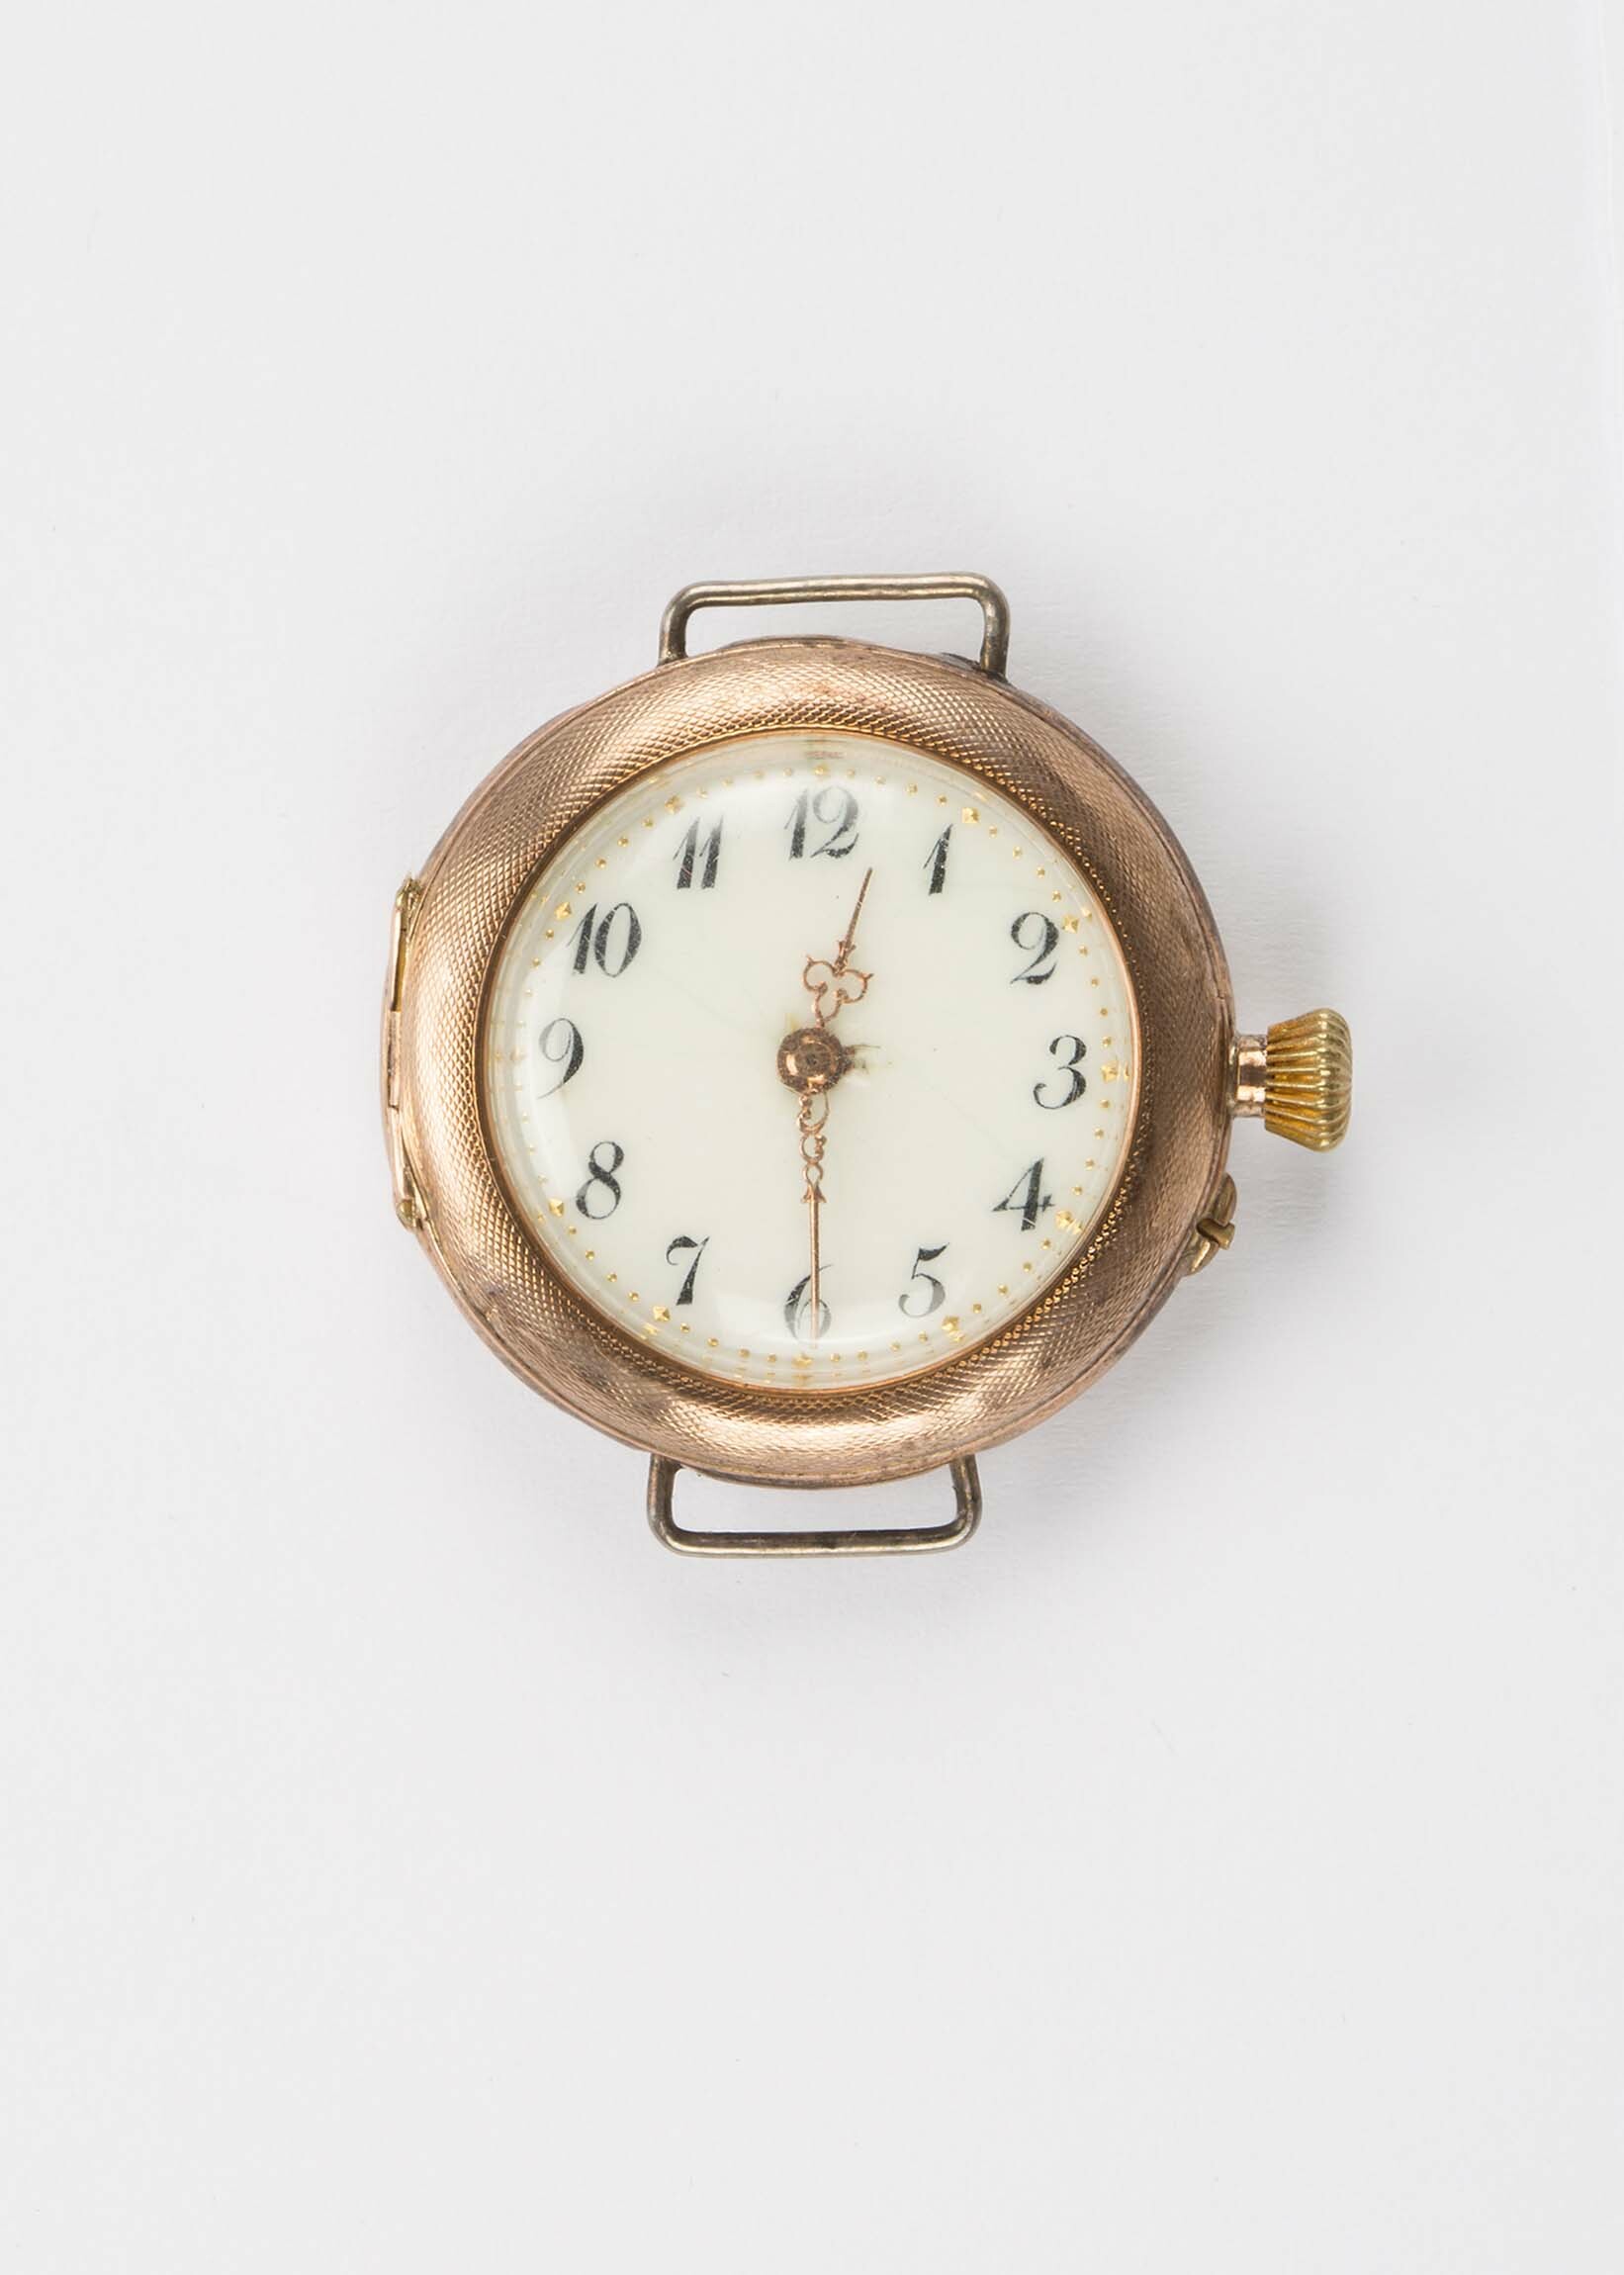 Armbanduhr, umgebaute Taschenuhr, wohl Schweiz, um 1900 (Deutsches Uhrenmuseum CC BY-SA)